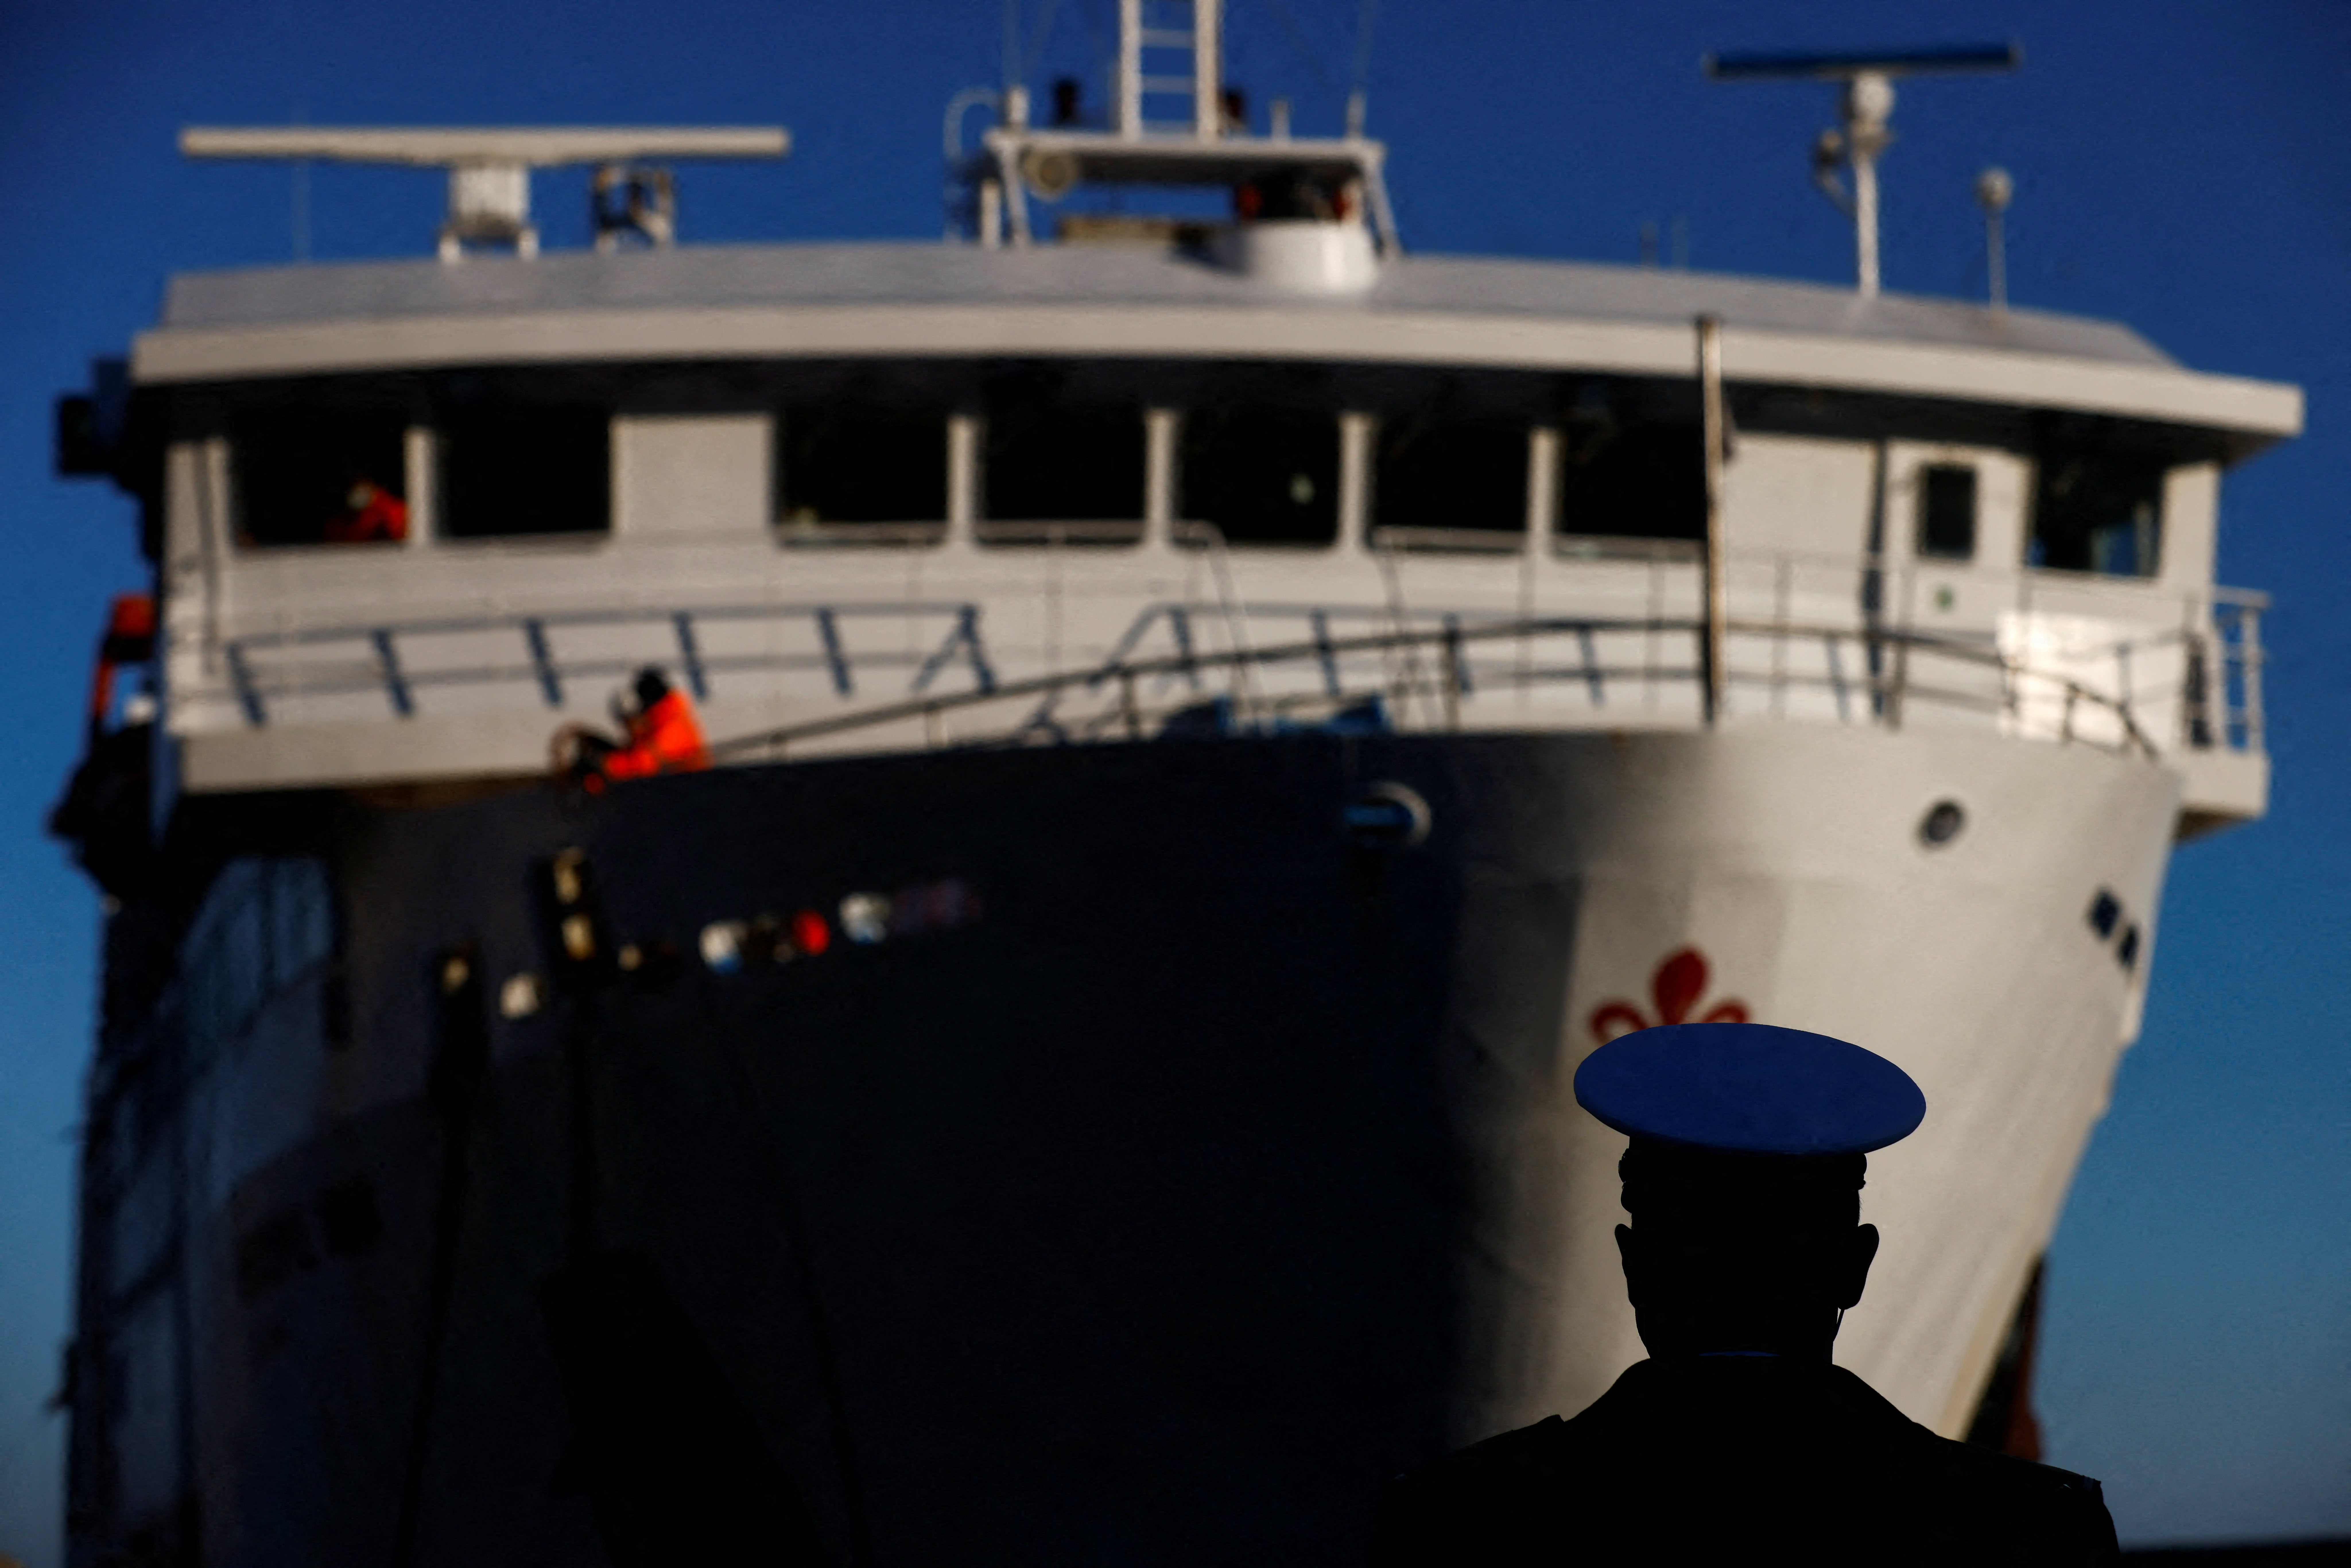 Un miembro de las autoridades portuarias observa cómo llega un ferry en un día del décimo aniversario del naufragio del Costa Concordia que mató a 32 personas después de que volcó y se hundió en la costa, en la isla de Giglio, Italia, el 13 de enero de 2022. REUTERS/Yara Nardi